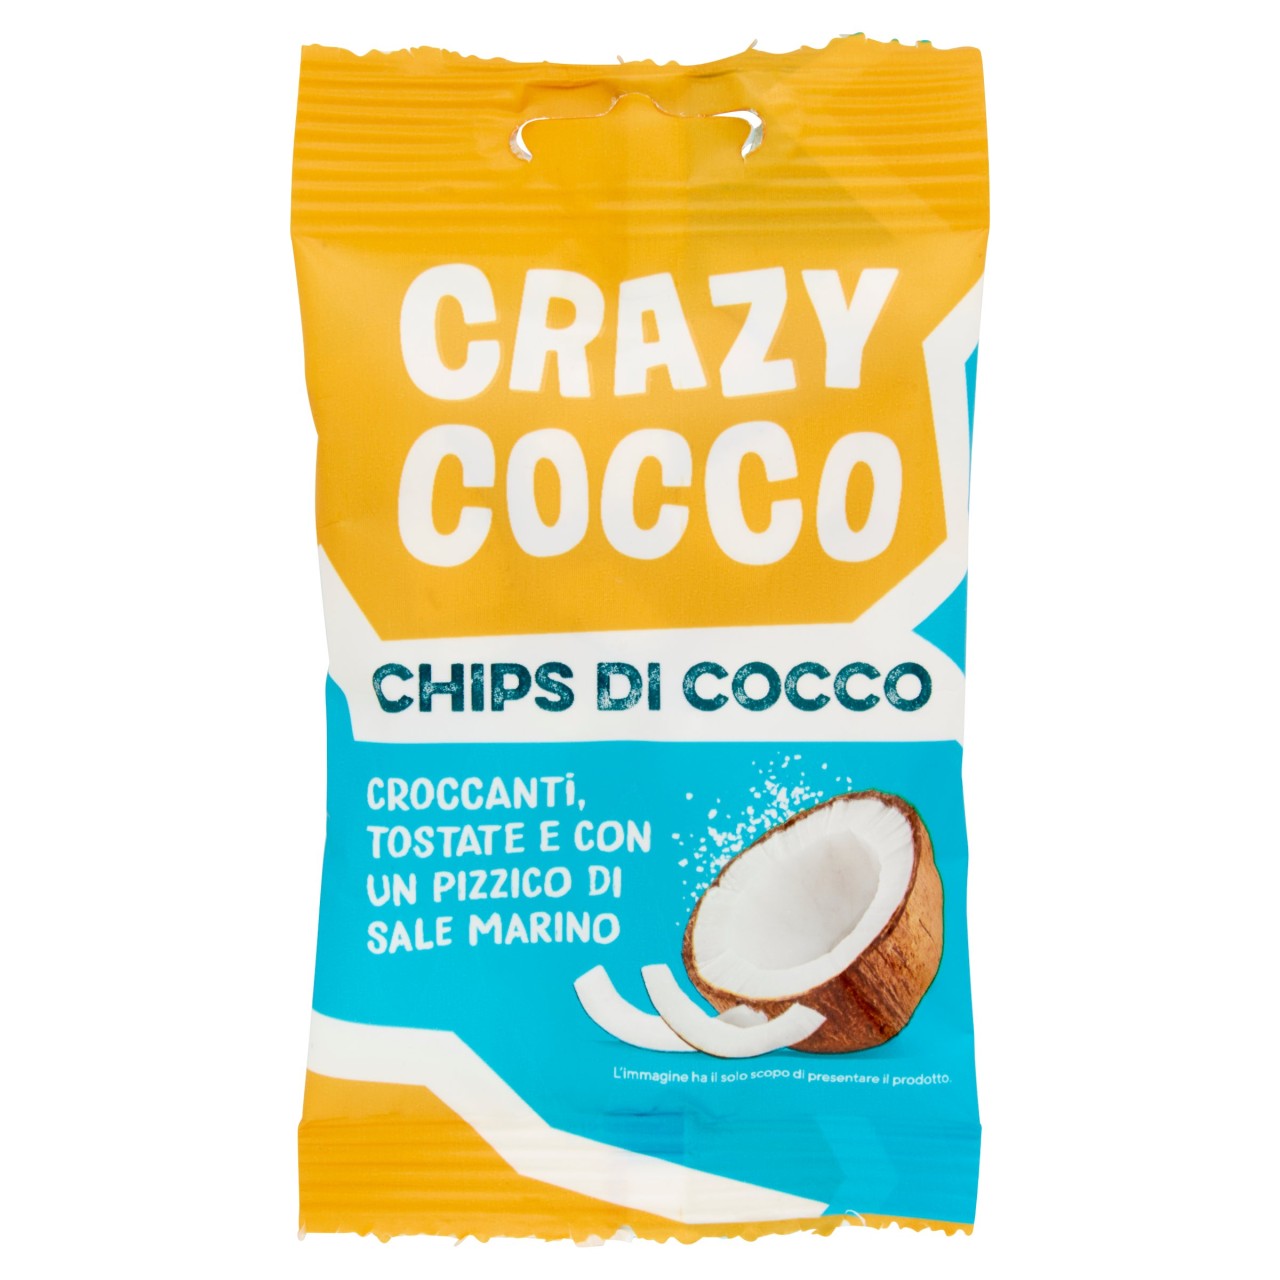 Crazy Cocco 20 g